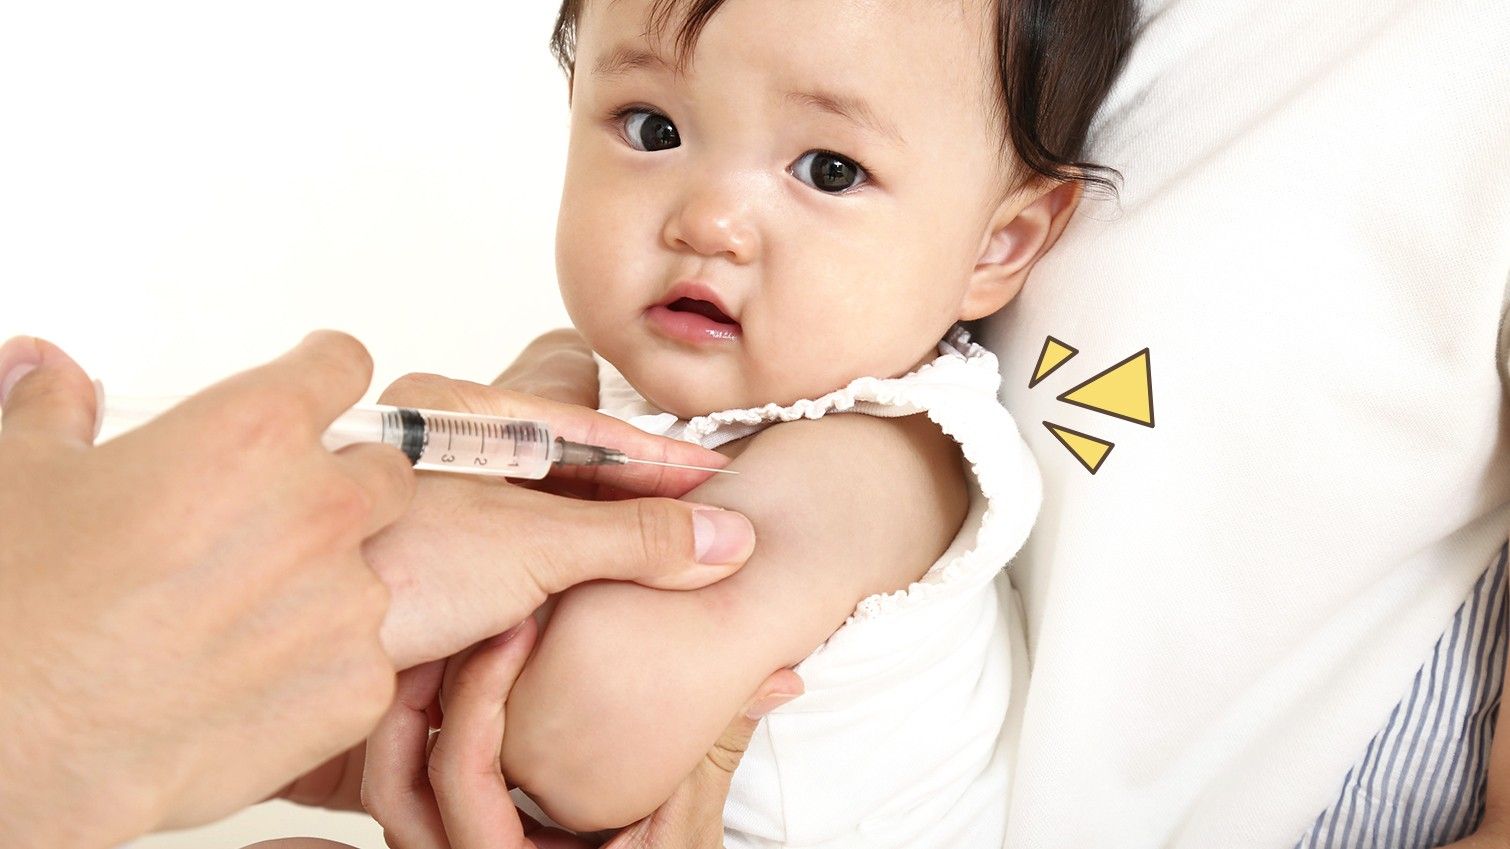 Cegah Penyakit Mematikan, Ini Anjuran Imunisasi Bayi 0-18 Bulan Menurut IDAI